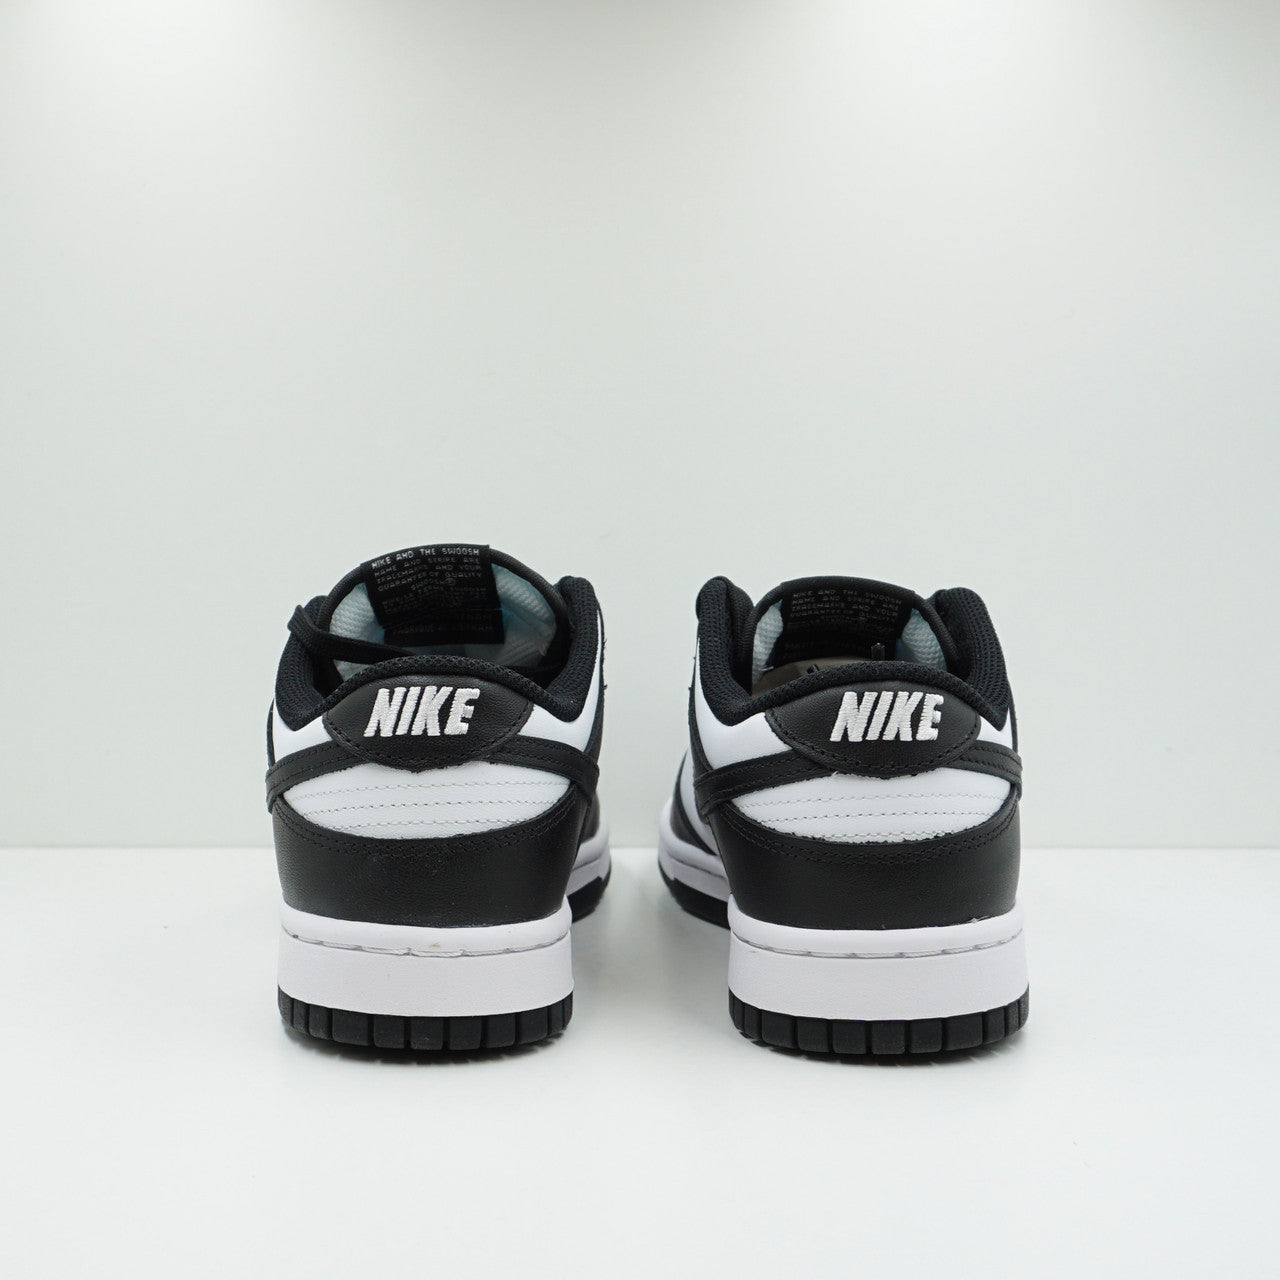 Nike Dunk Low White Black (2021) (W)